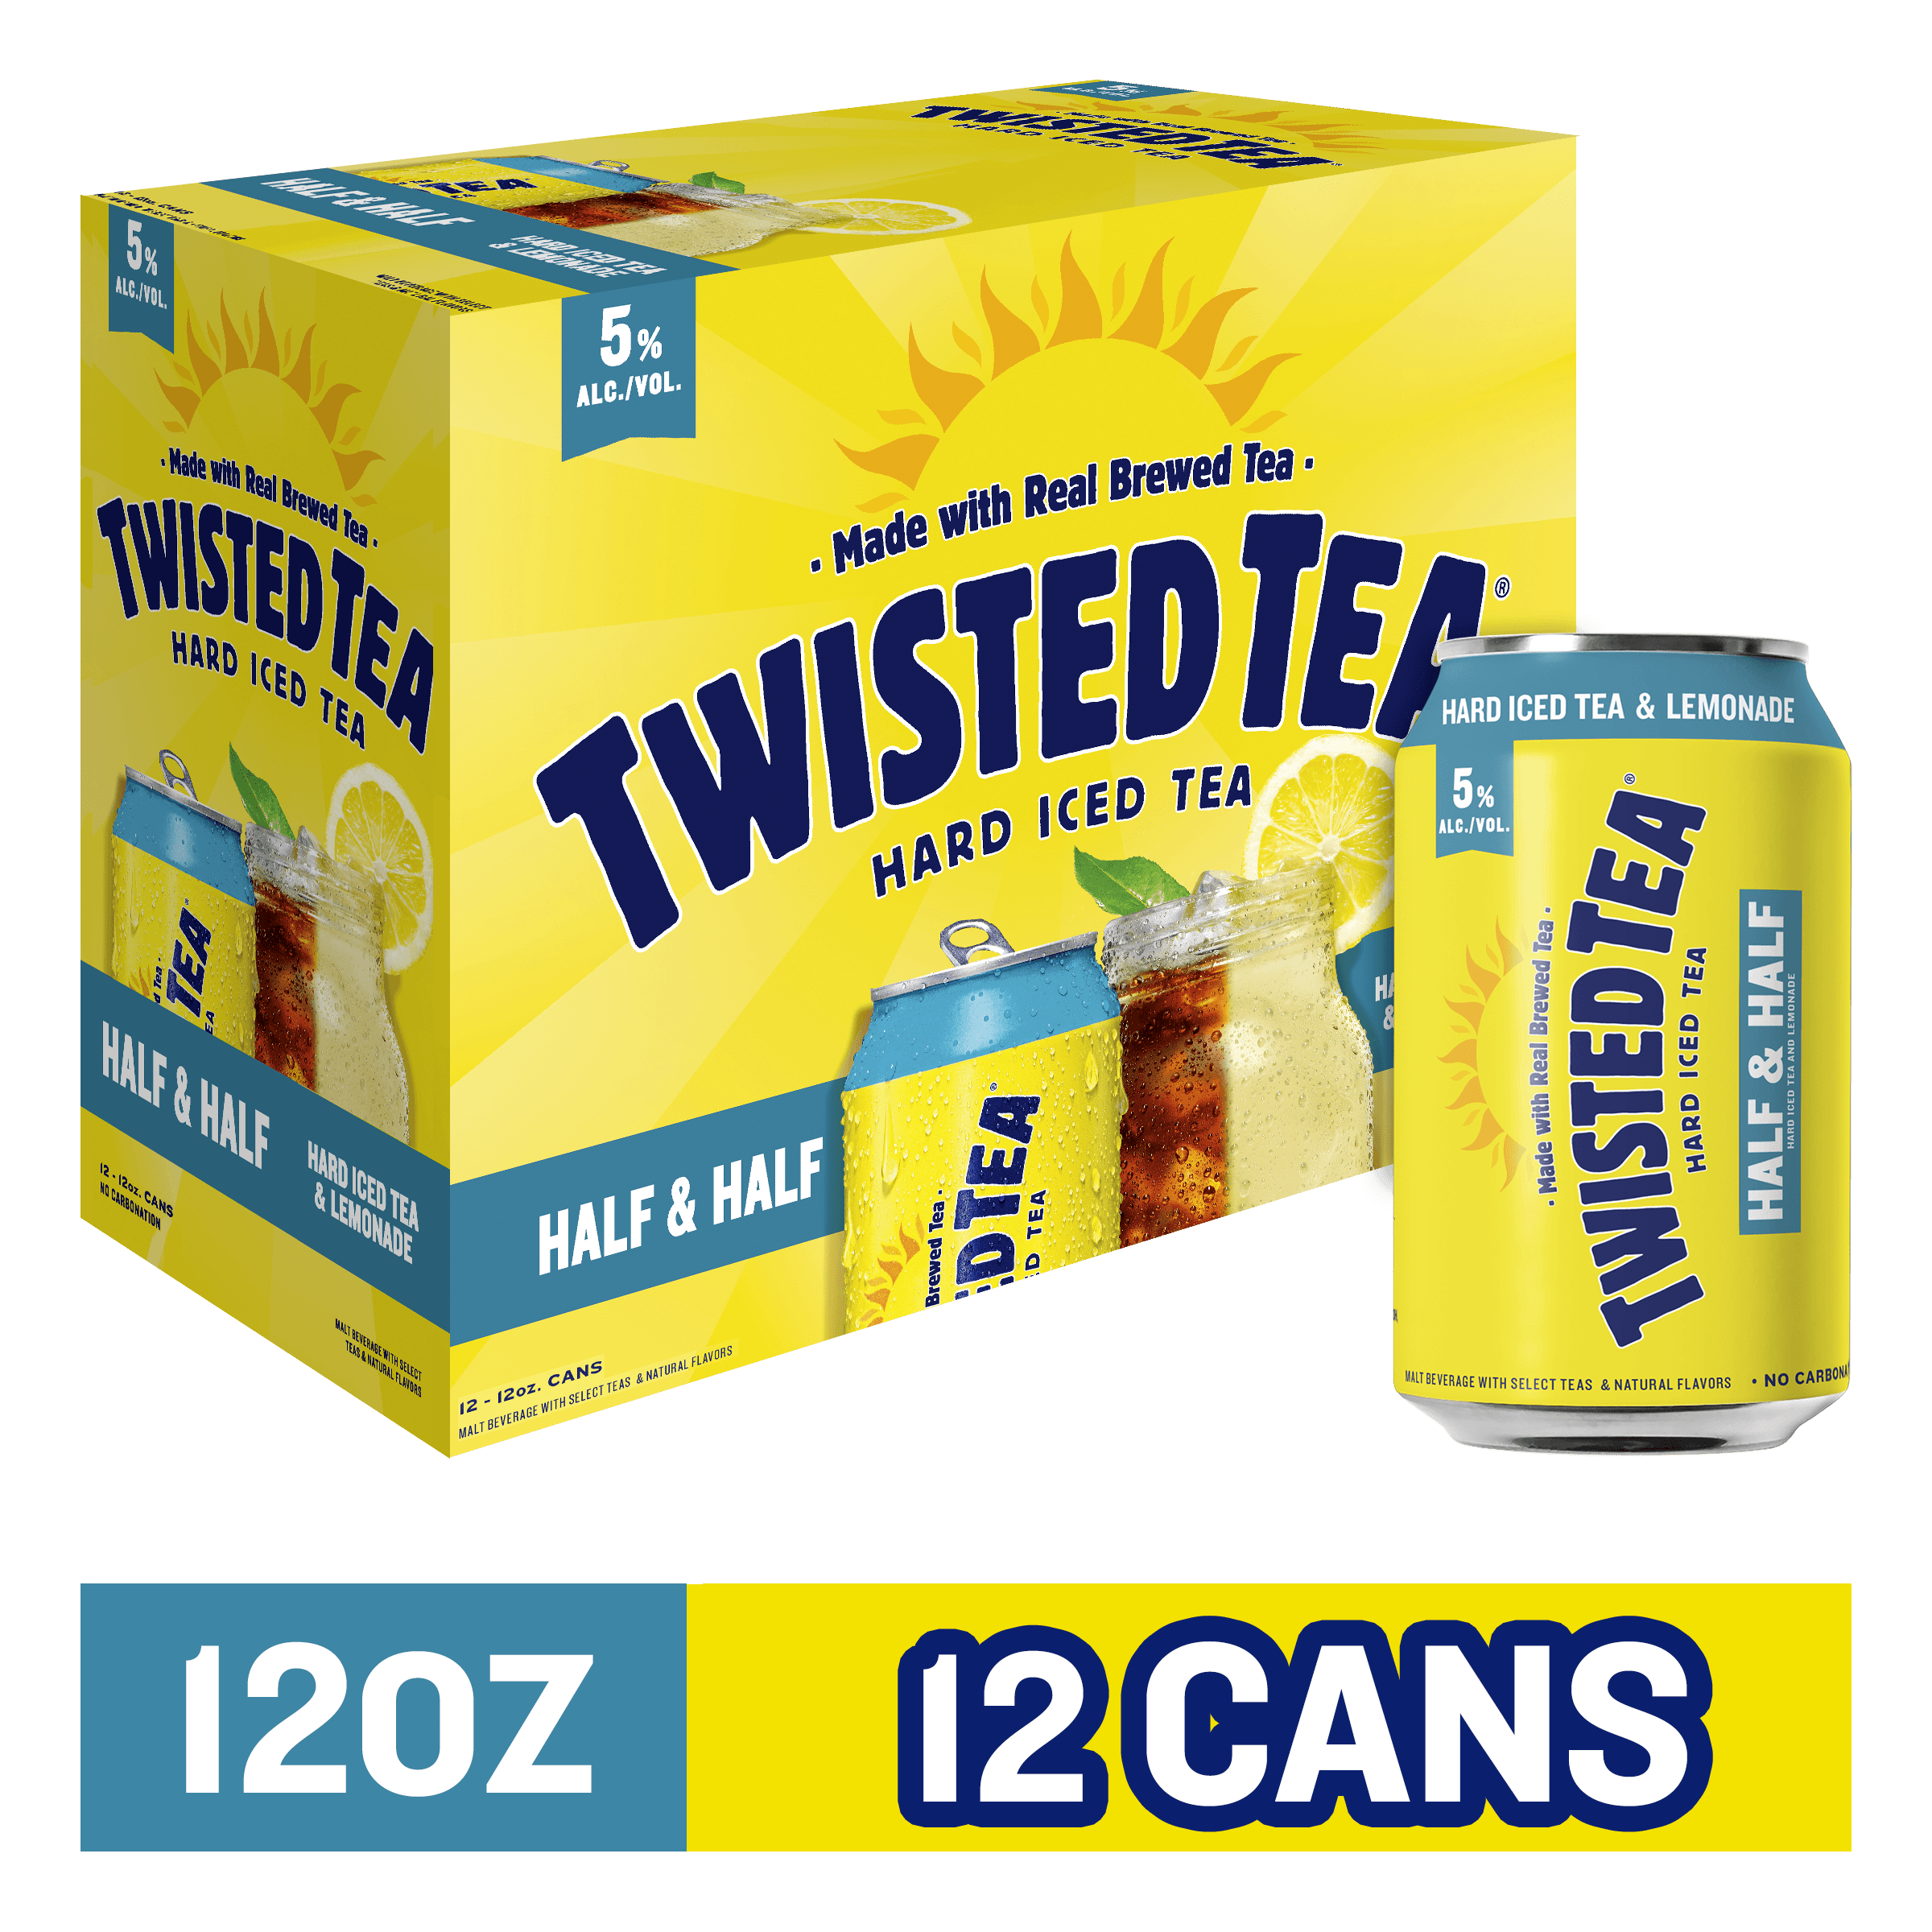 Twisted Tea Half & Half Hard Iced Tea 12oz